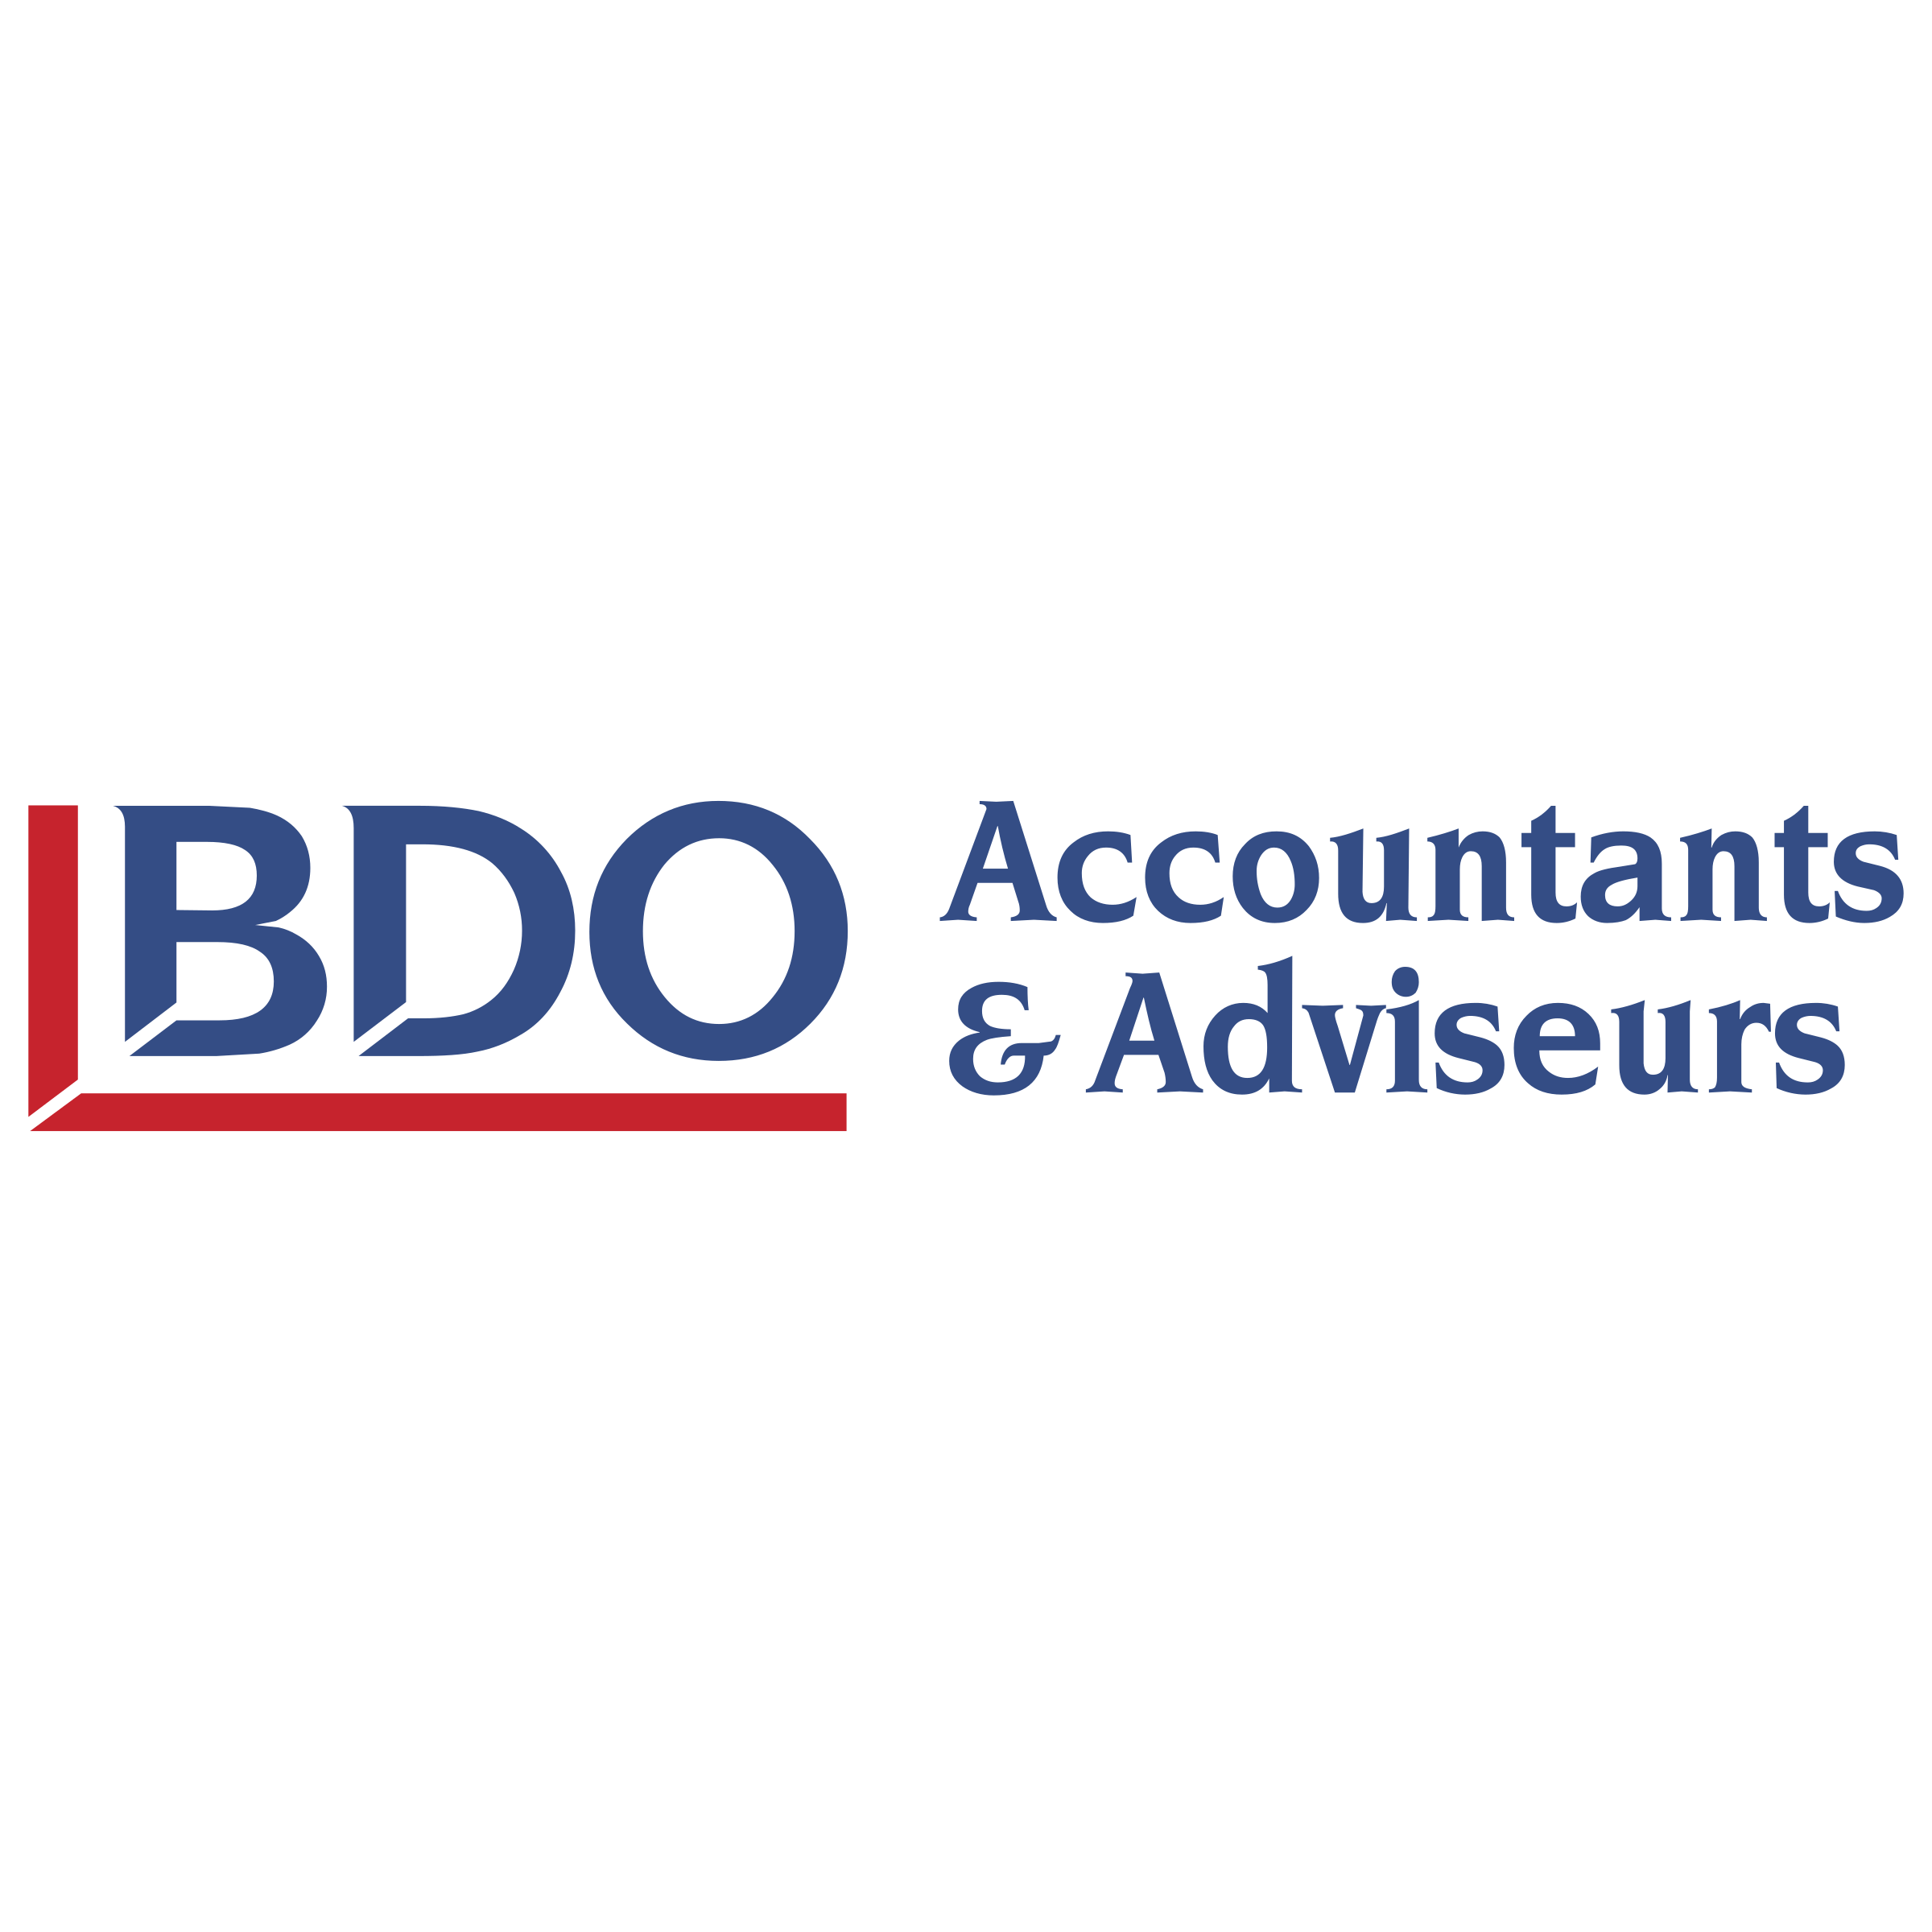 BDO Logo - BDO Logo PNG Transparent & SVG Vector